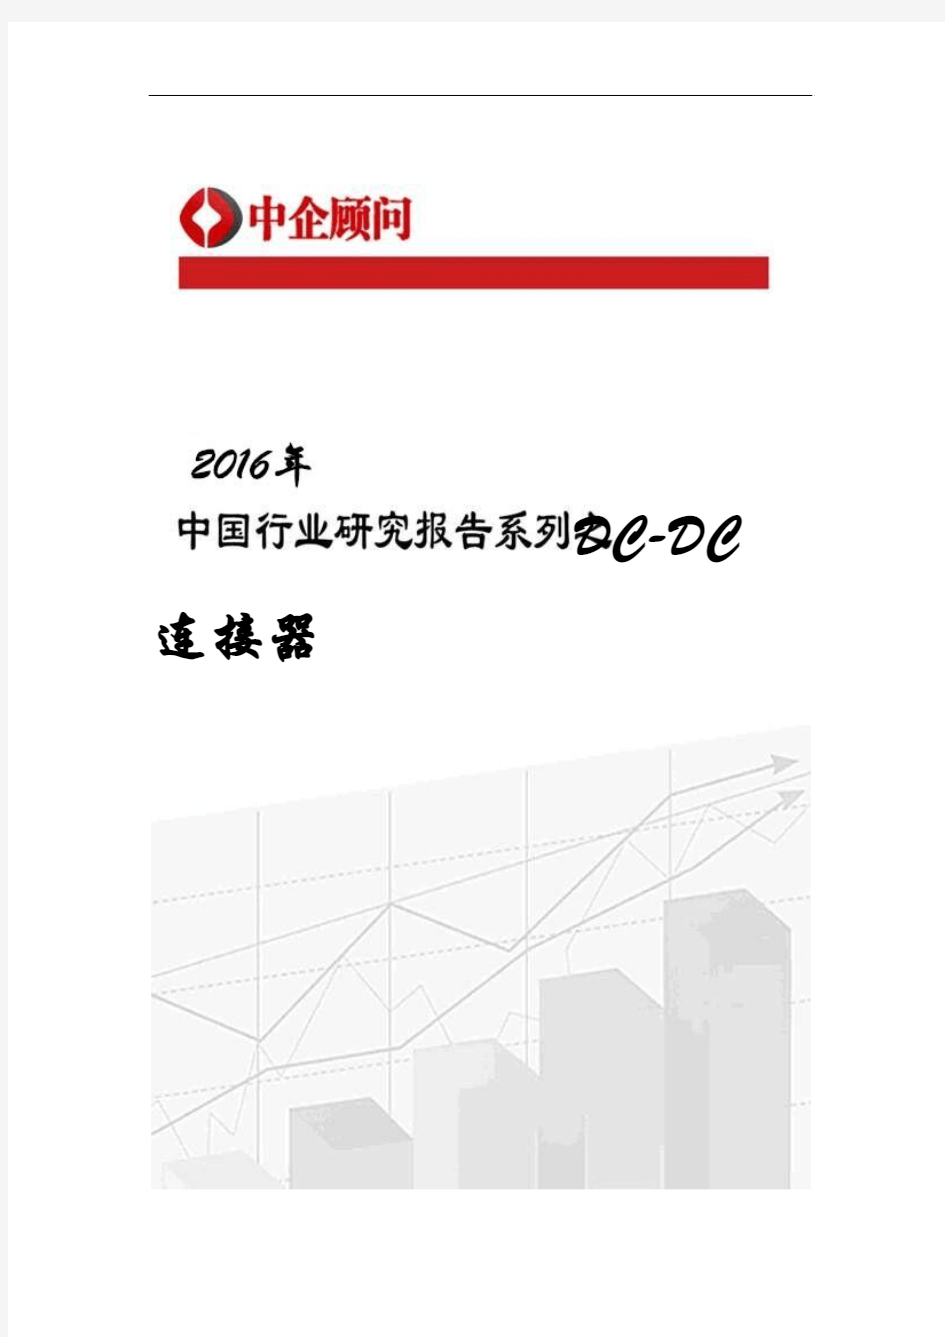 2016-2022年中国DC-DC连接器市场调研及投资战略咨询报告